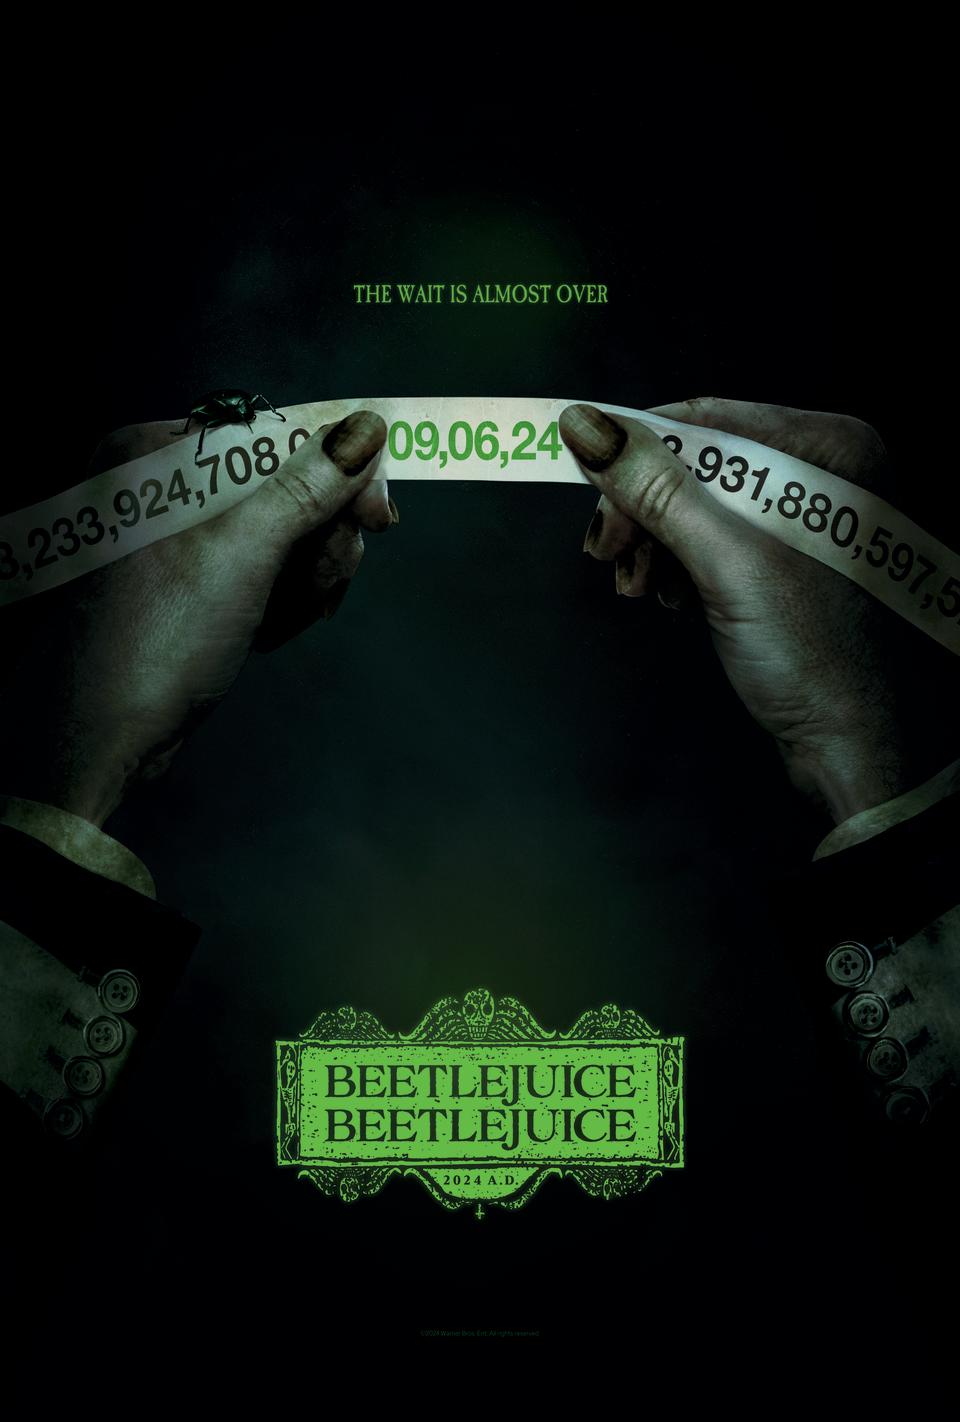 The "Beetlejuice Beetlejuice" poster